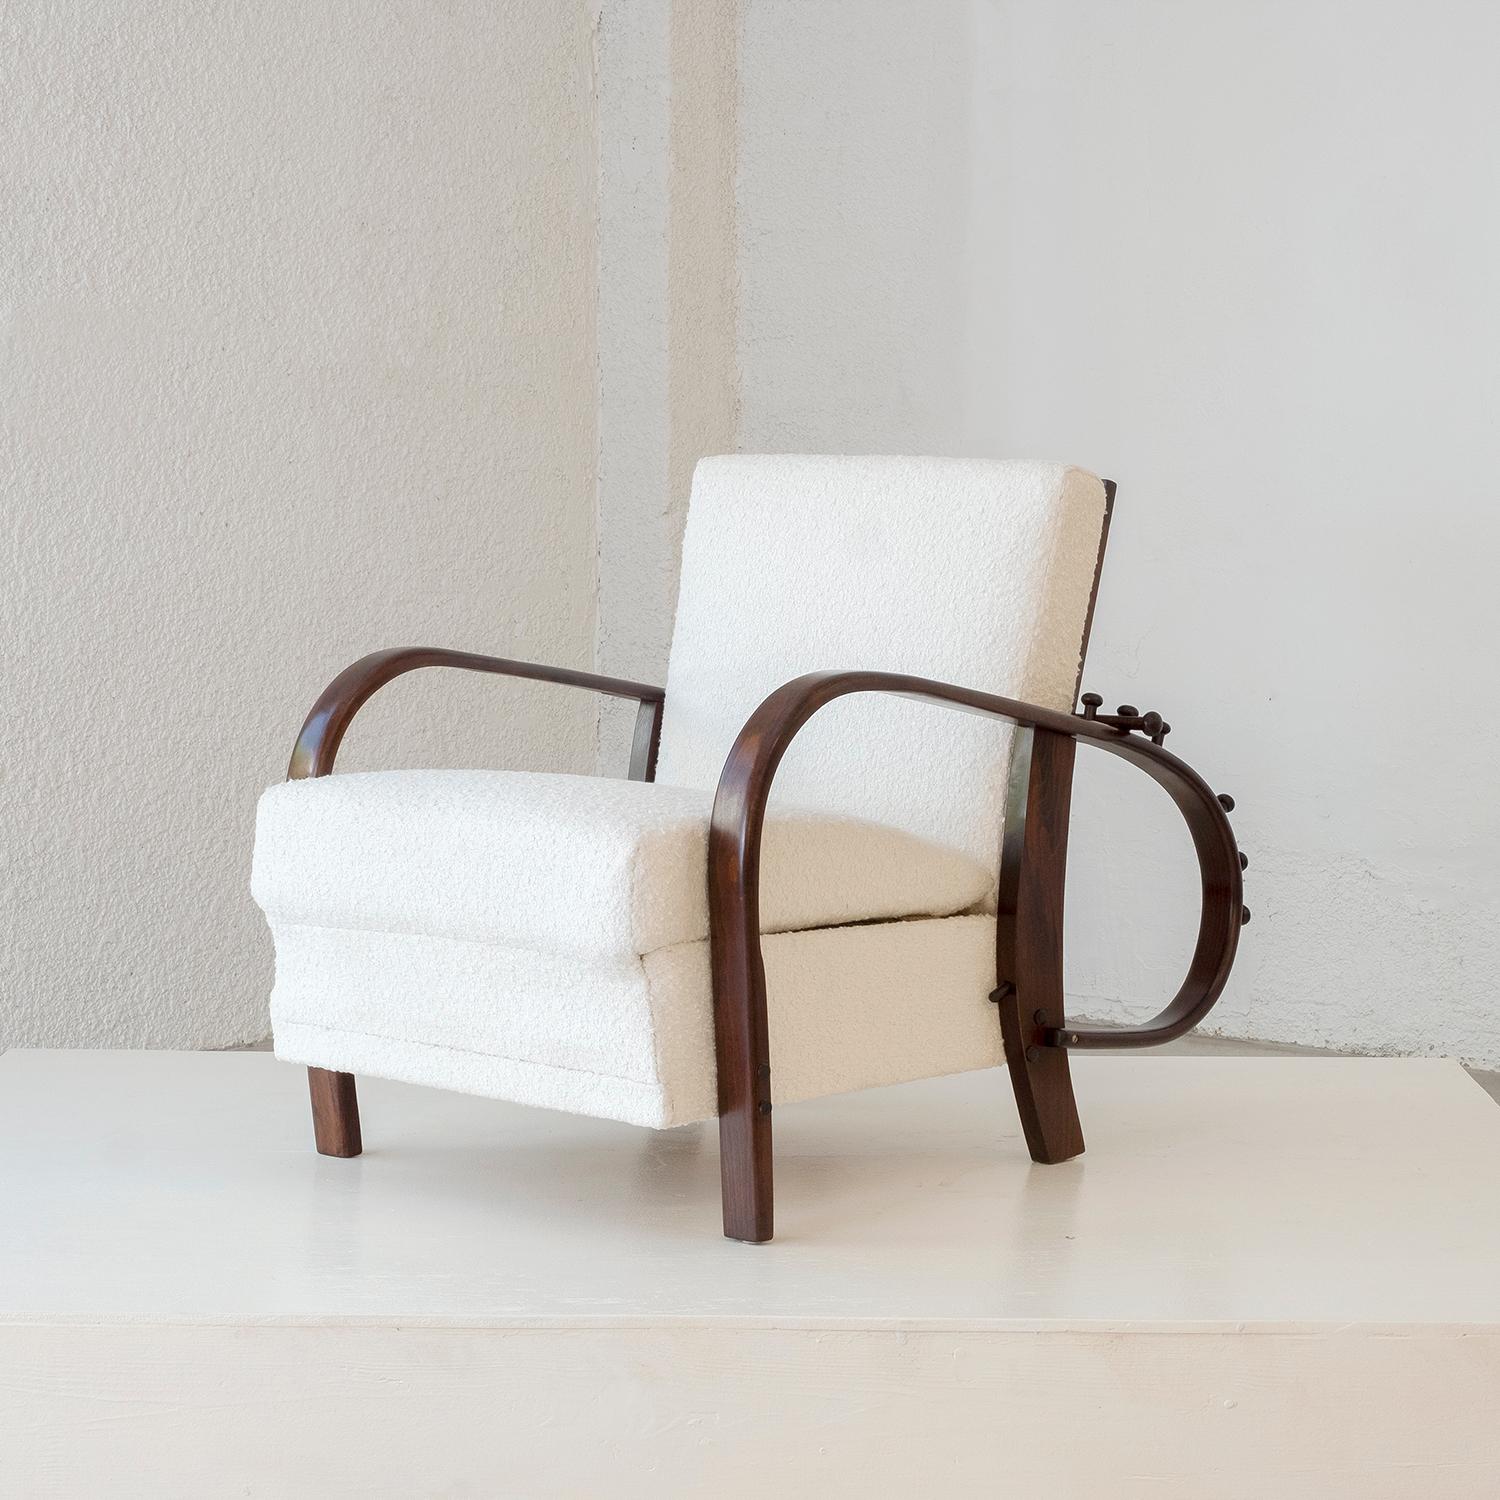 Chaise longue inclinable Art Déco tchèque en acajou poli, fabriquée à la main, dans le style de Jindrich Halabala, en bon état. Le fauteuil club simple détaillé est composé d'un dossier réglable et d'accoudoirs arqués et ronds. Le siège du fauteuil